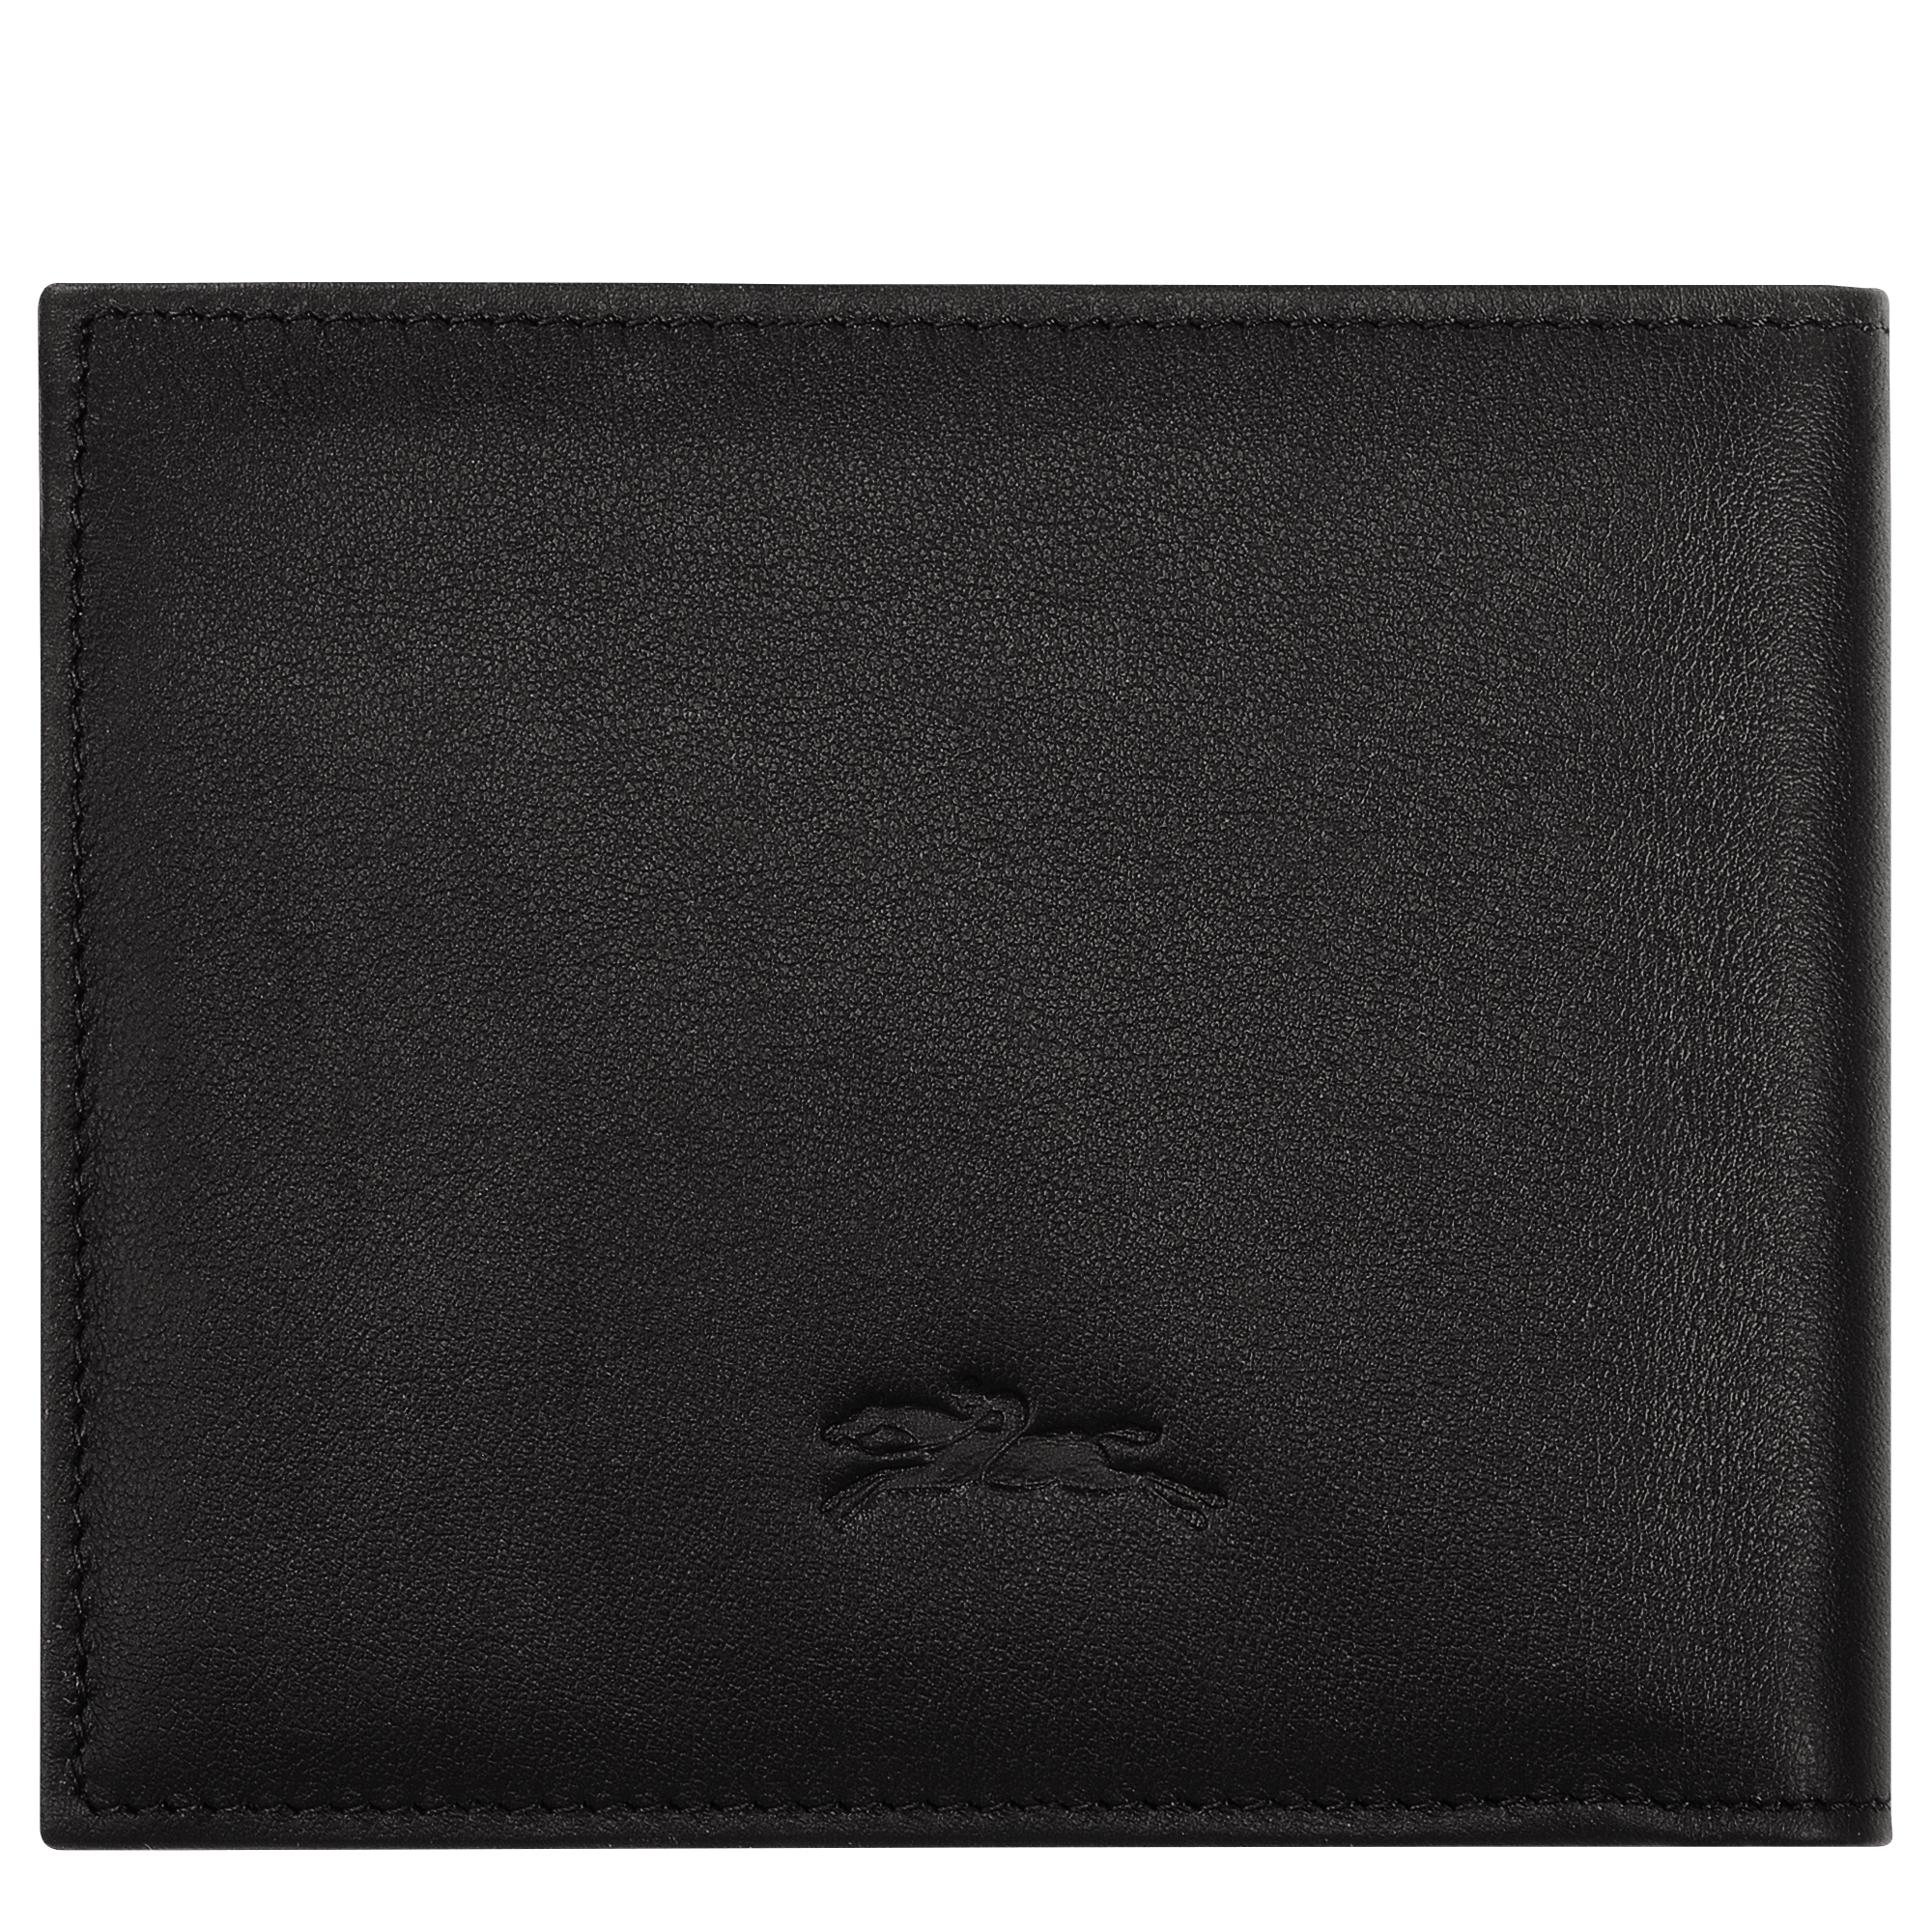 Longchamp sur Seine 钱包, 黑色